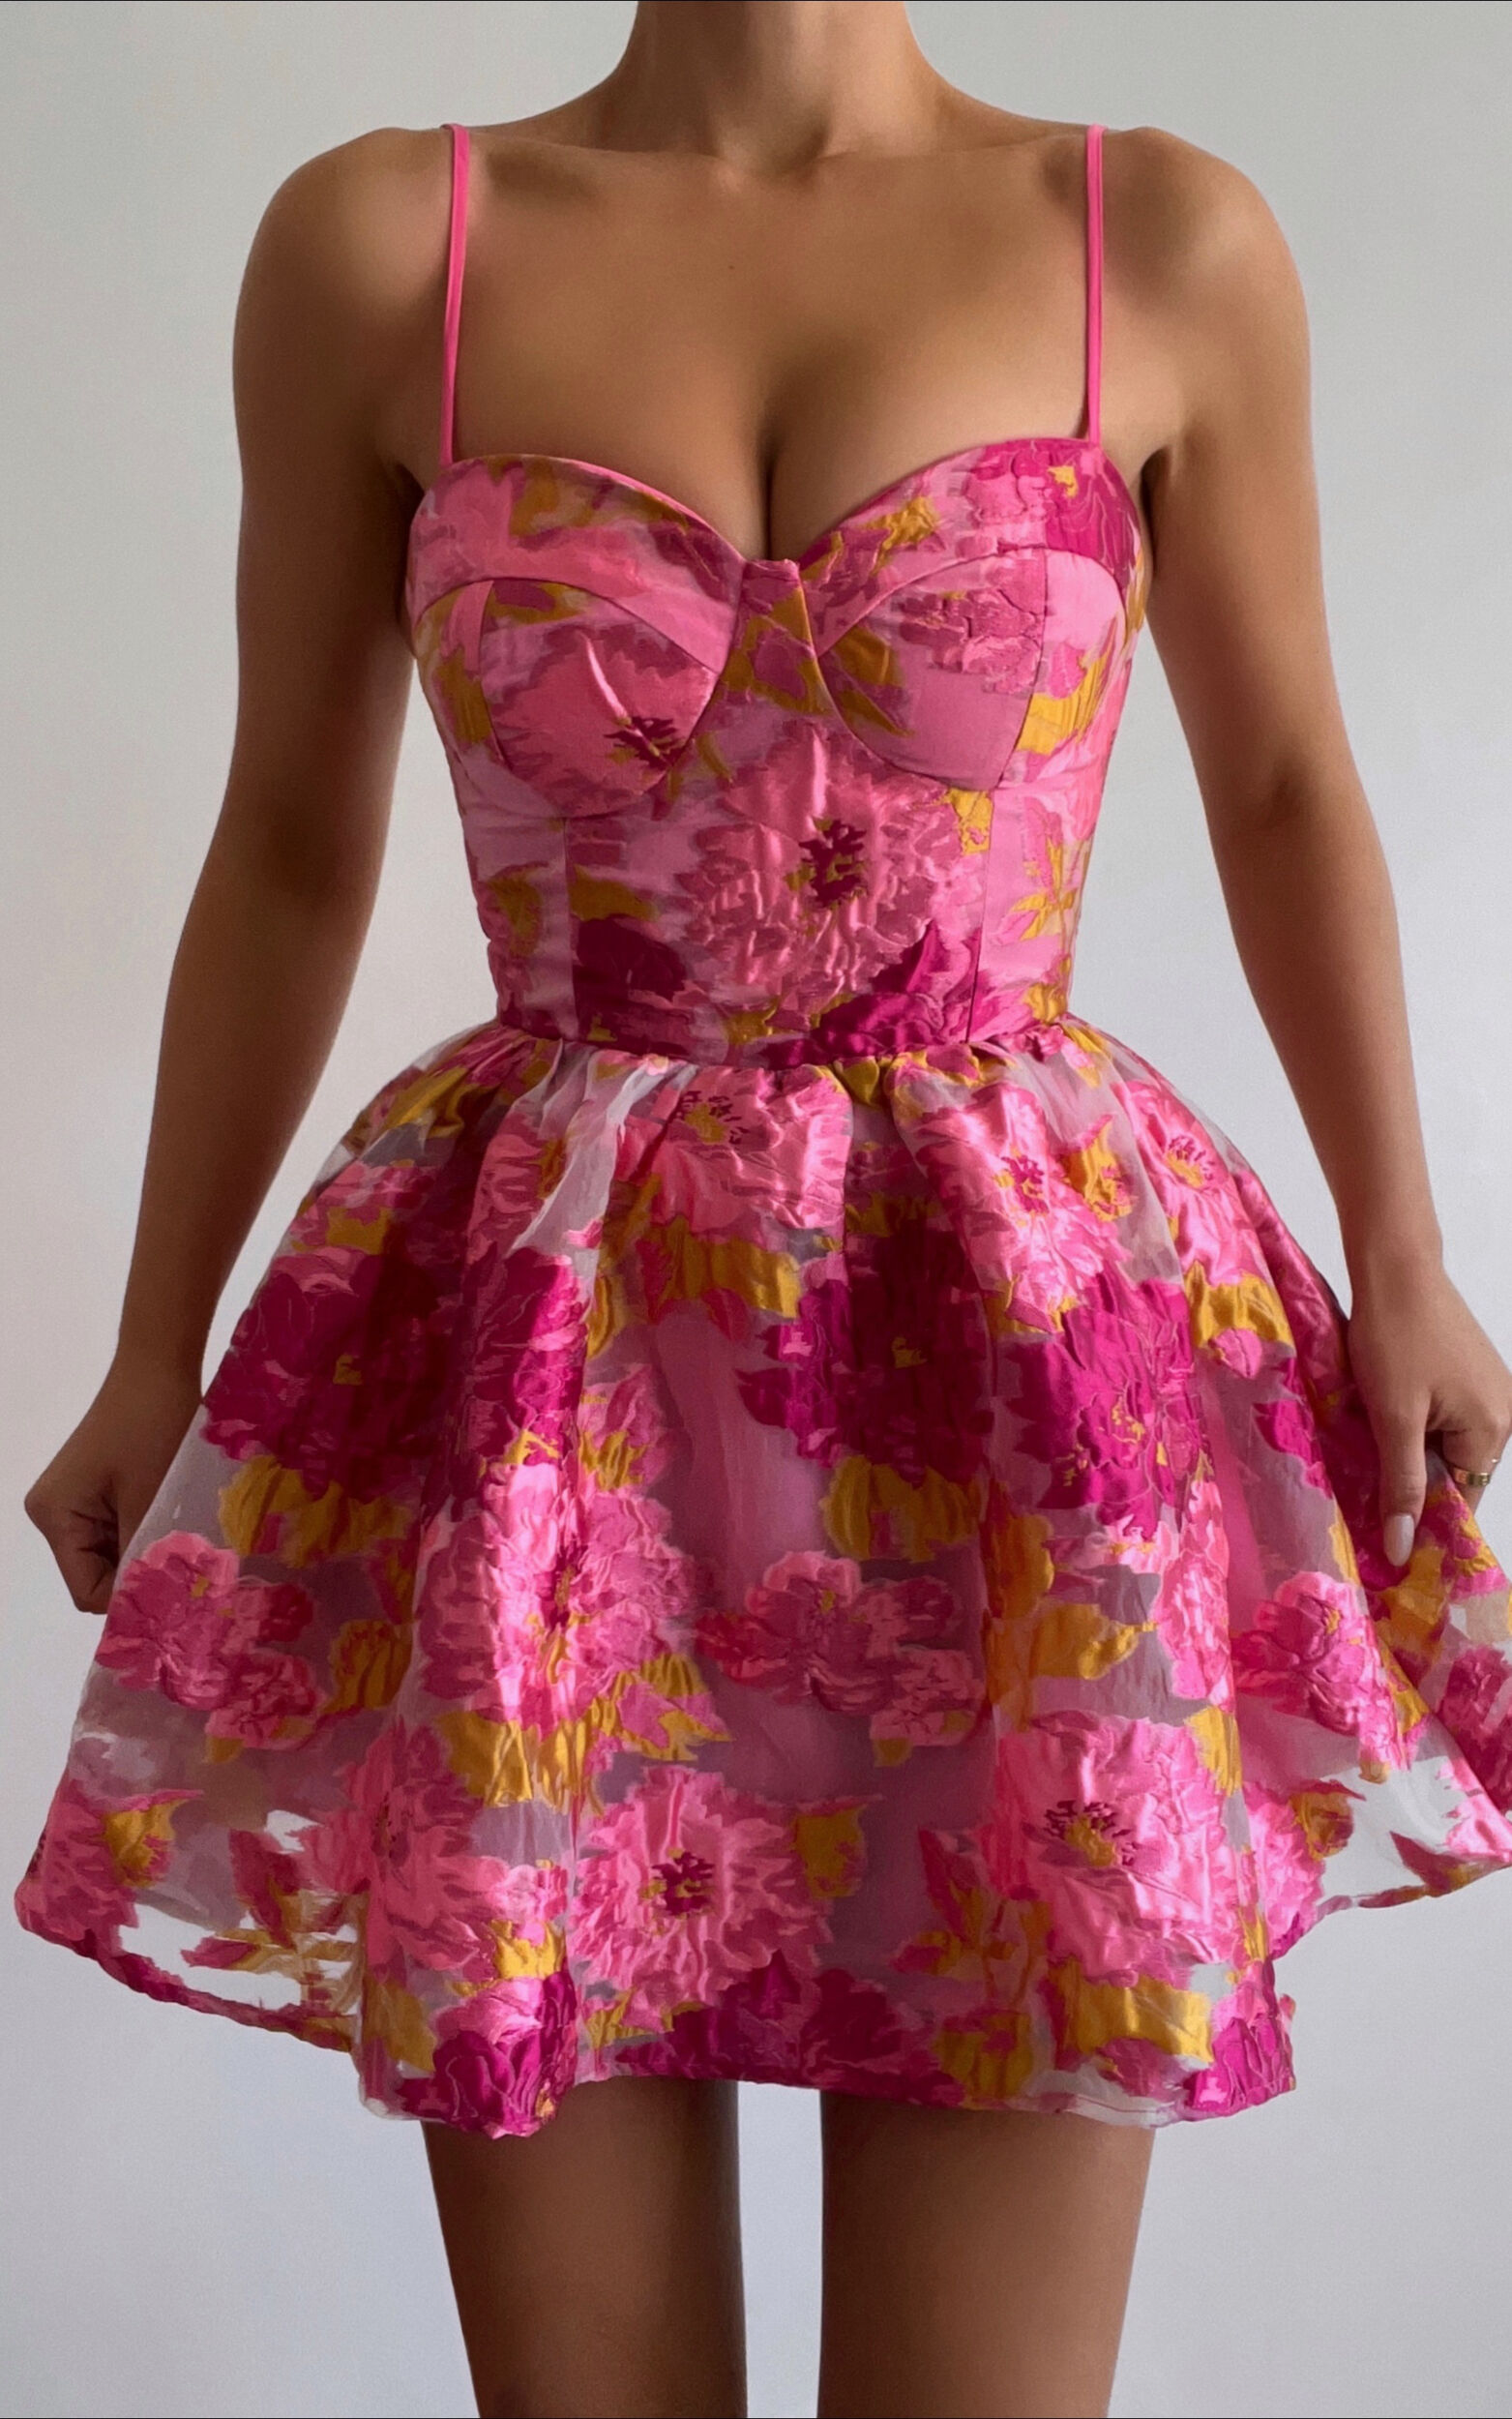 Brailey Mini Dress - Sweetheart Bustier Dress in Pink Jacquard - 06, PNK1